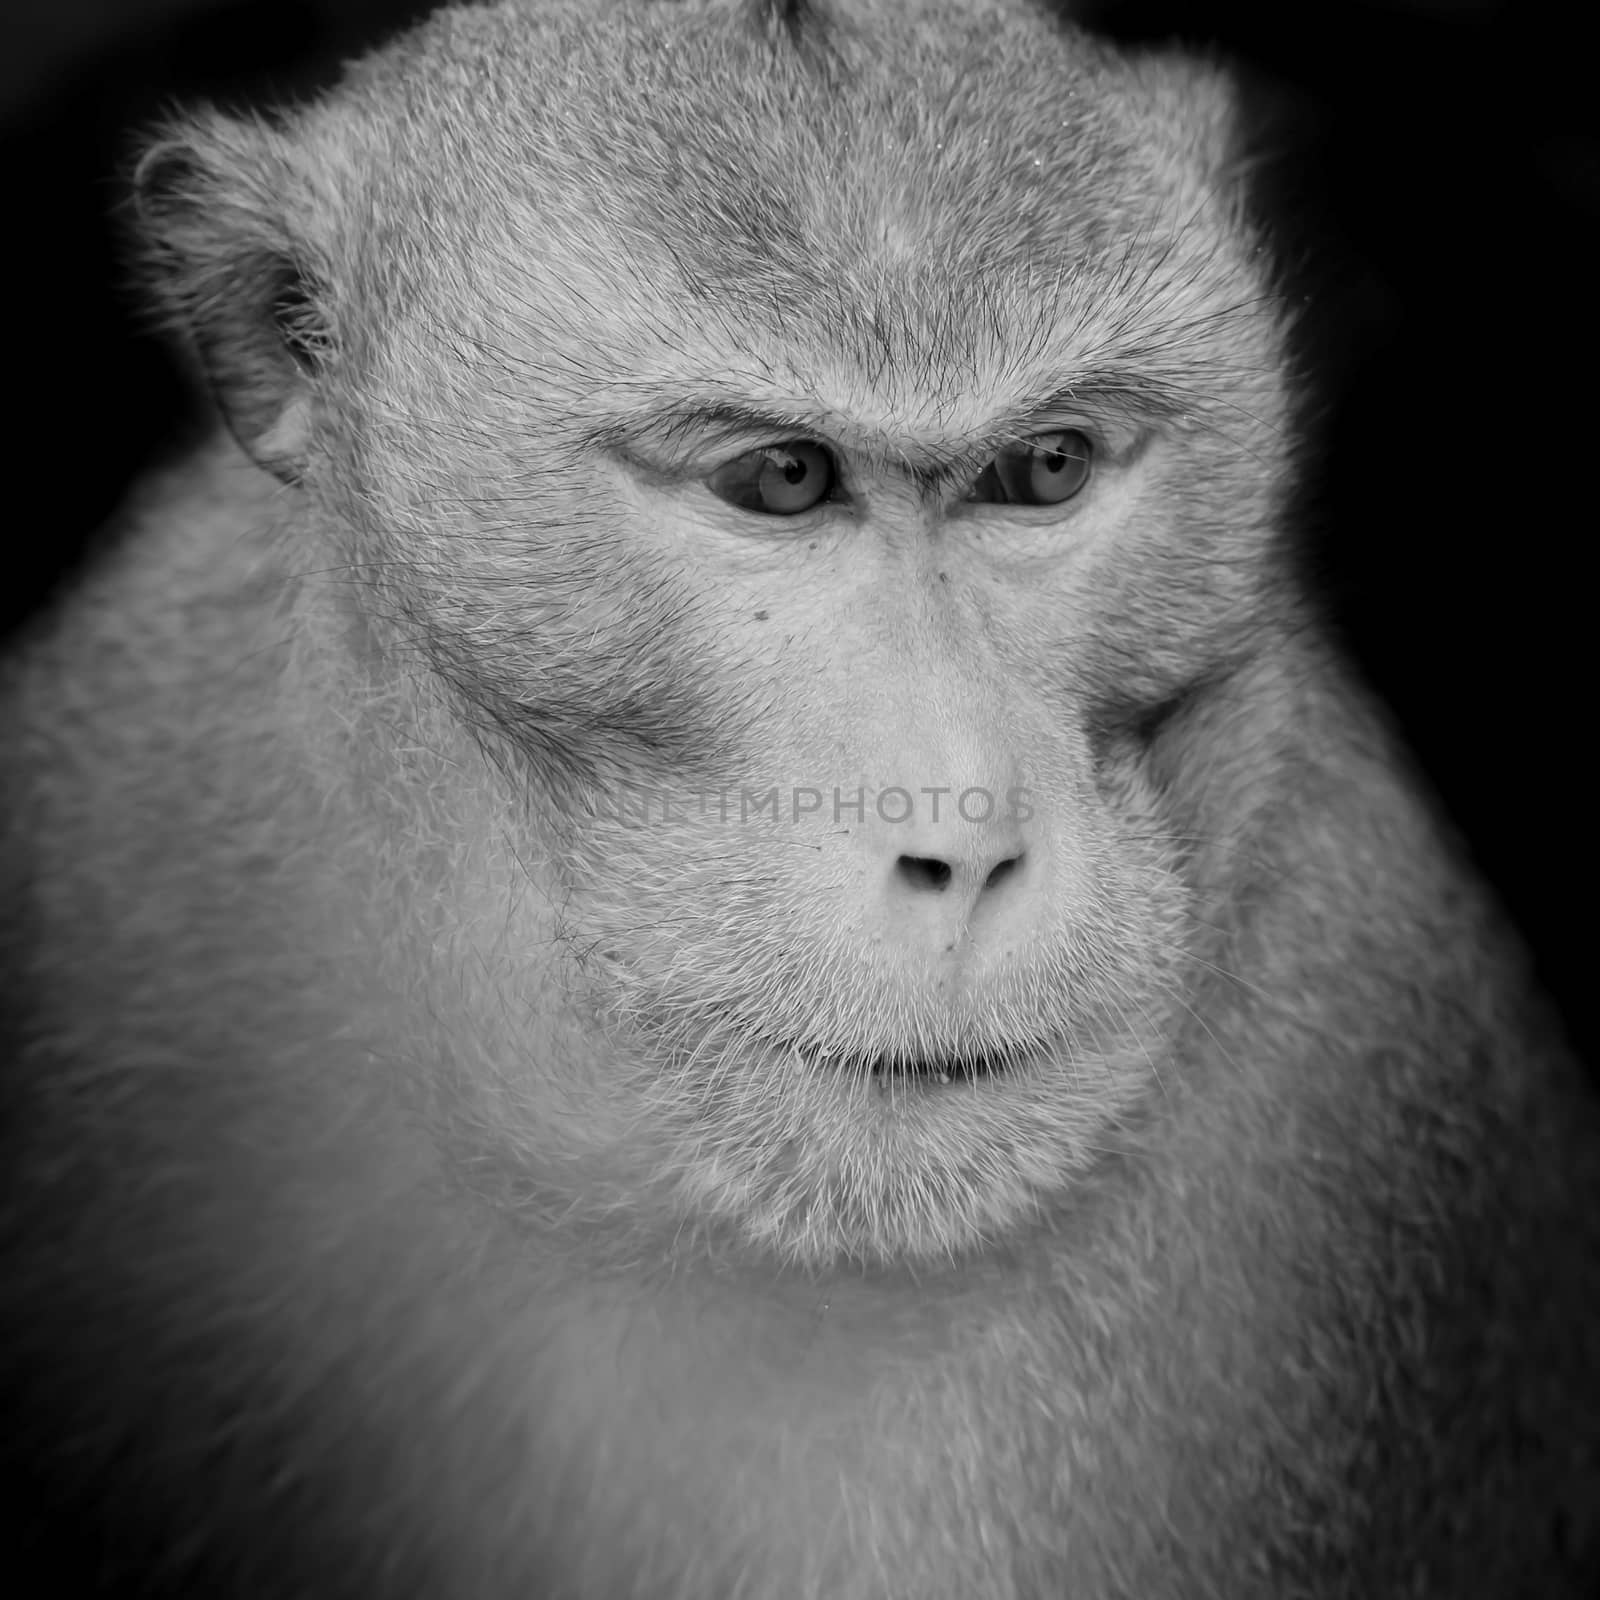 Portrait of monkey by art9858